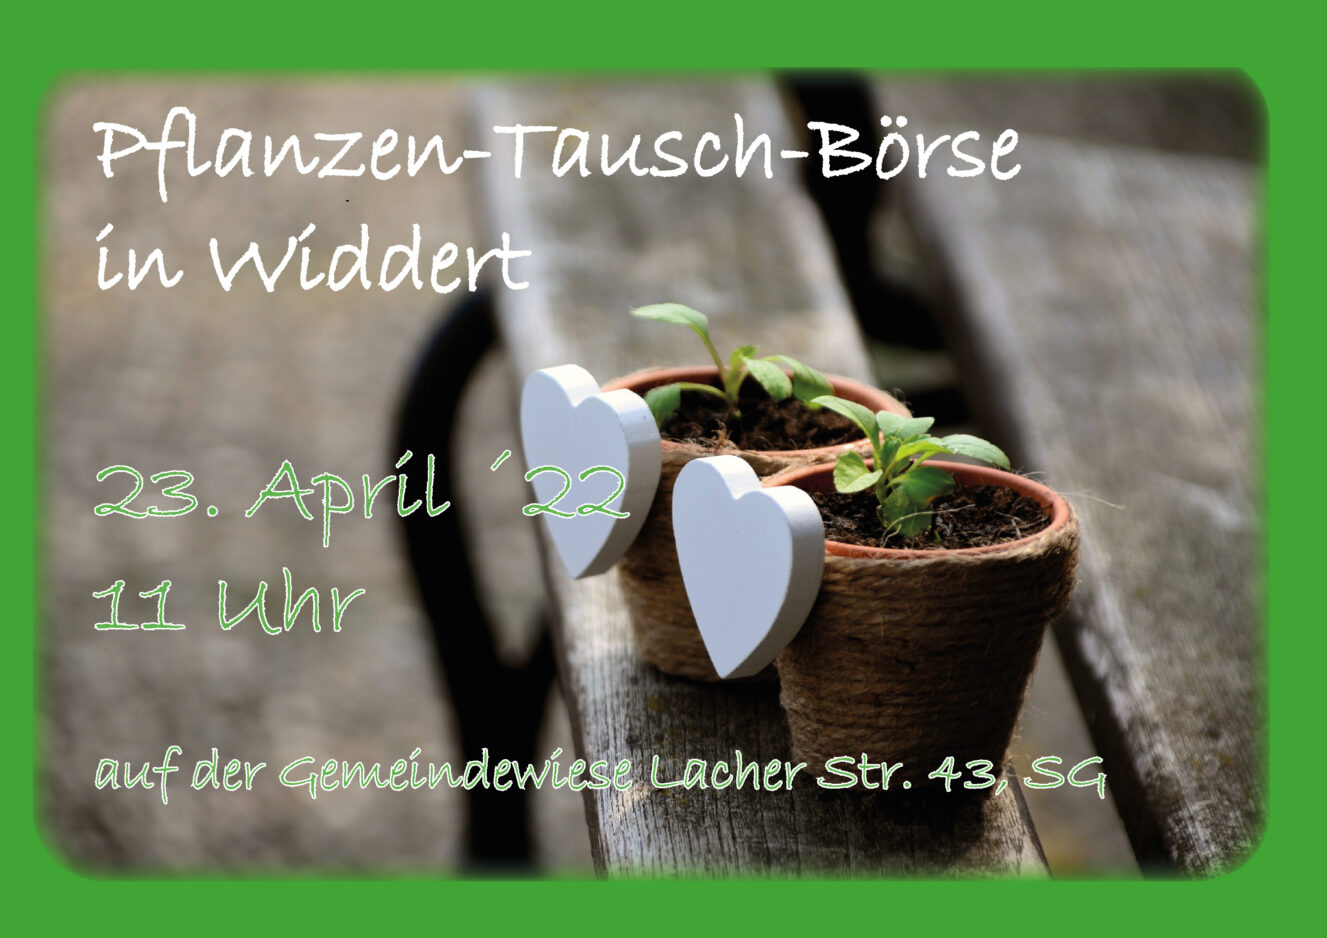 Pflanzen-Tausch-Börse Widdert 23. April ab 11 Uhr auf der Gemeindewiese Lacher Str 43 SG